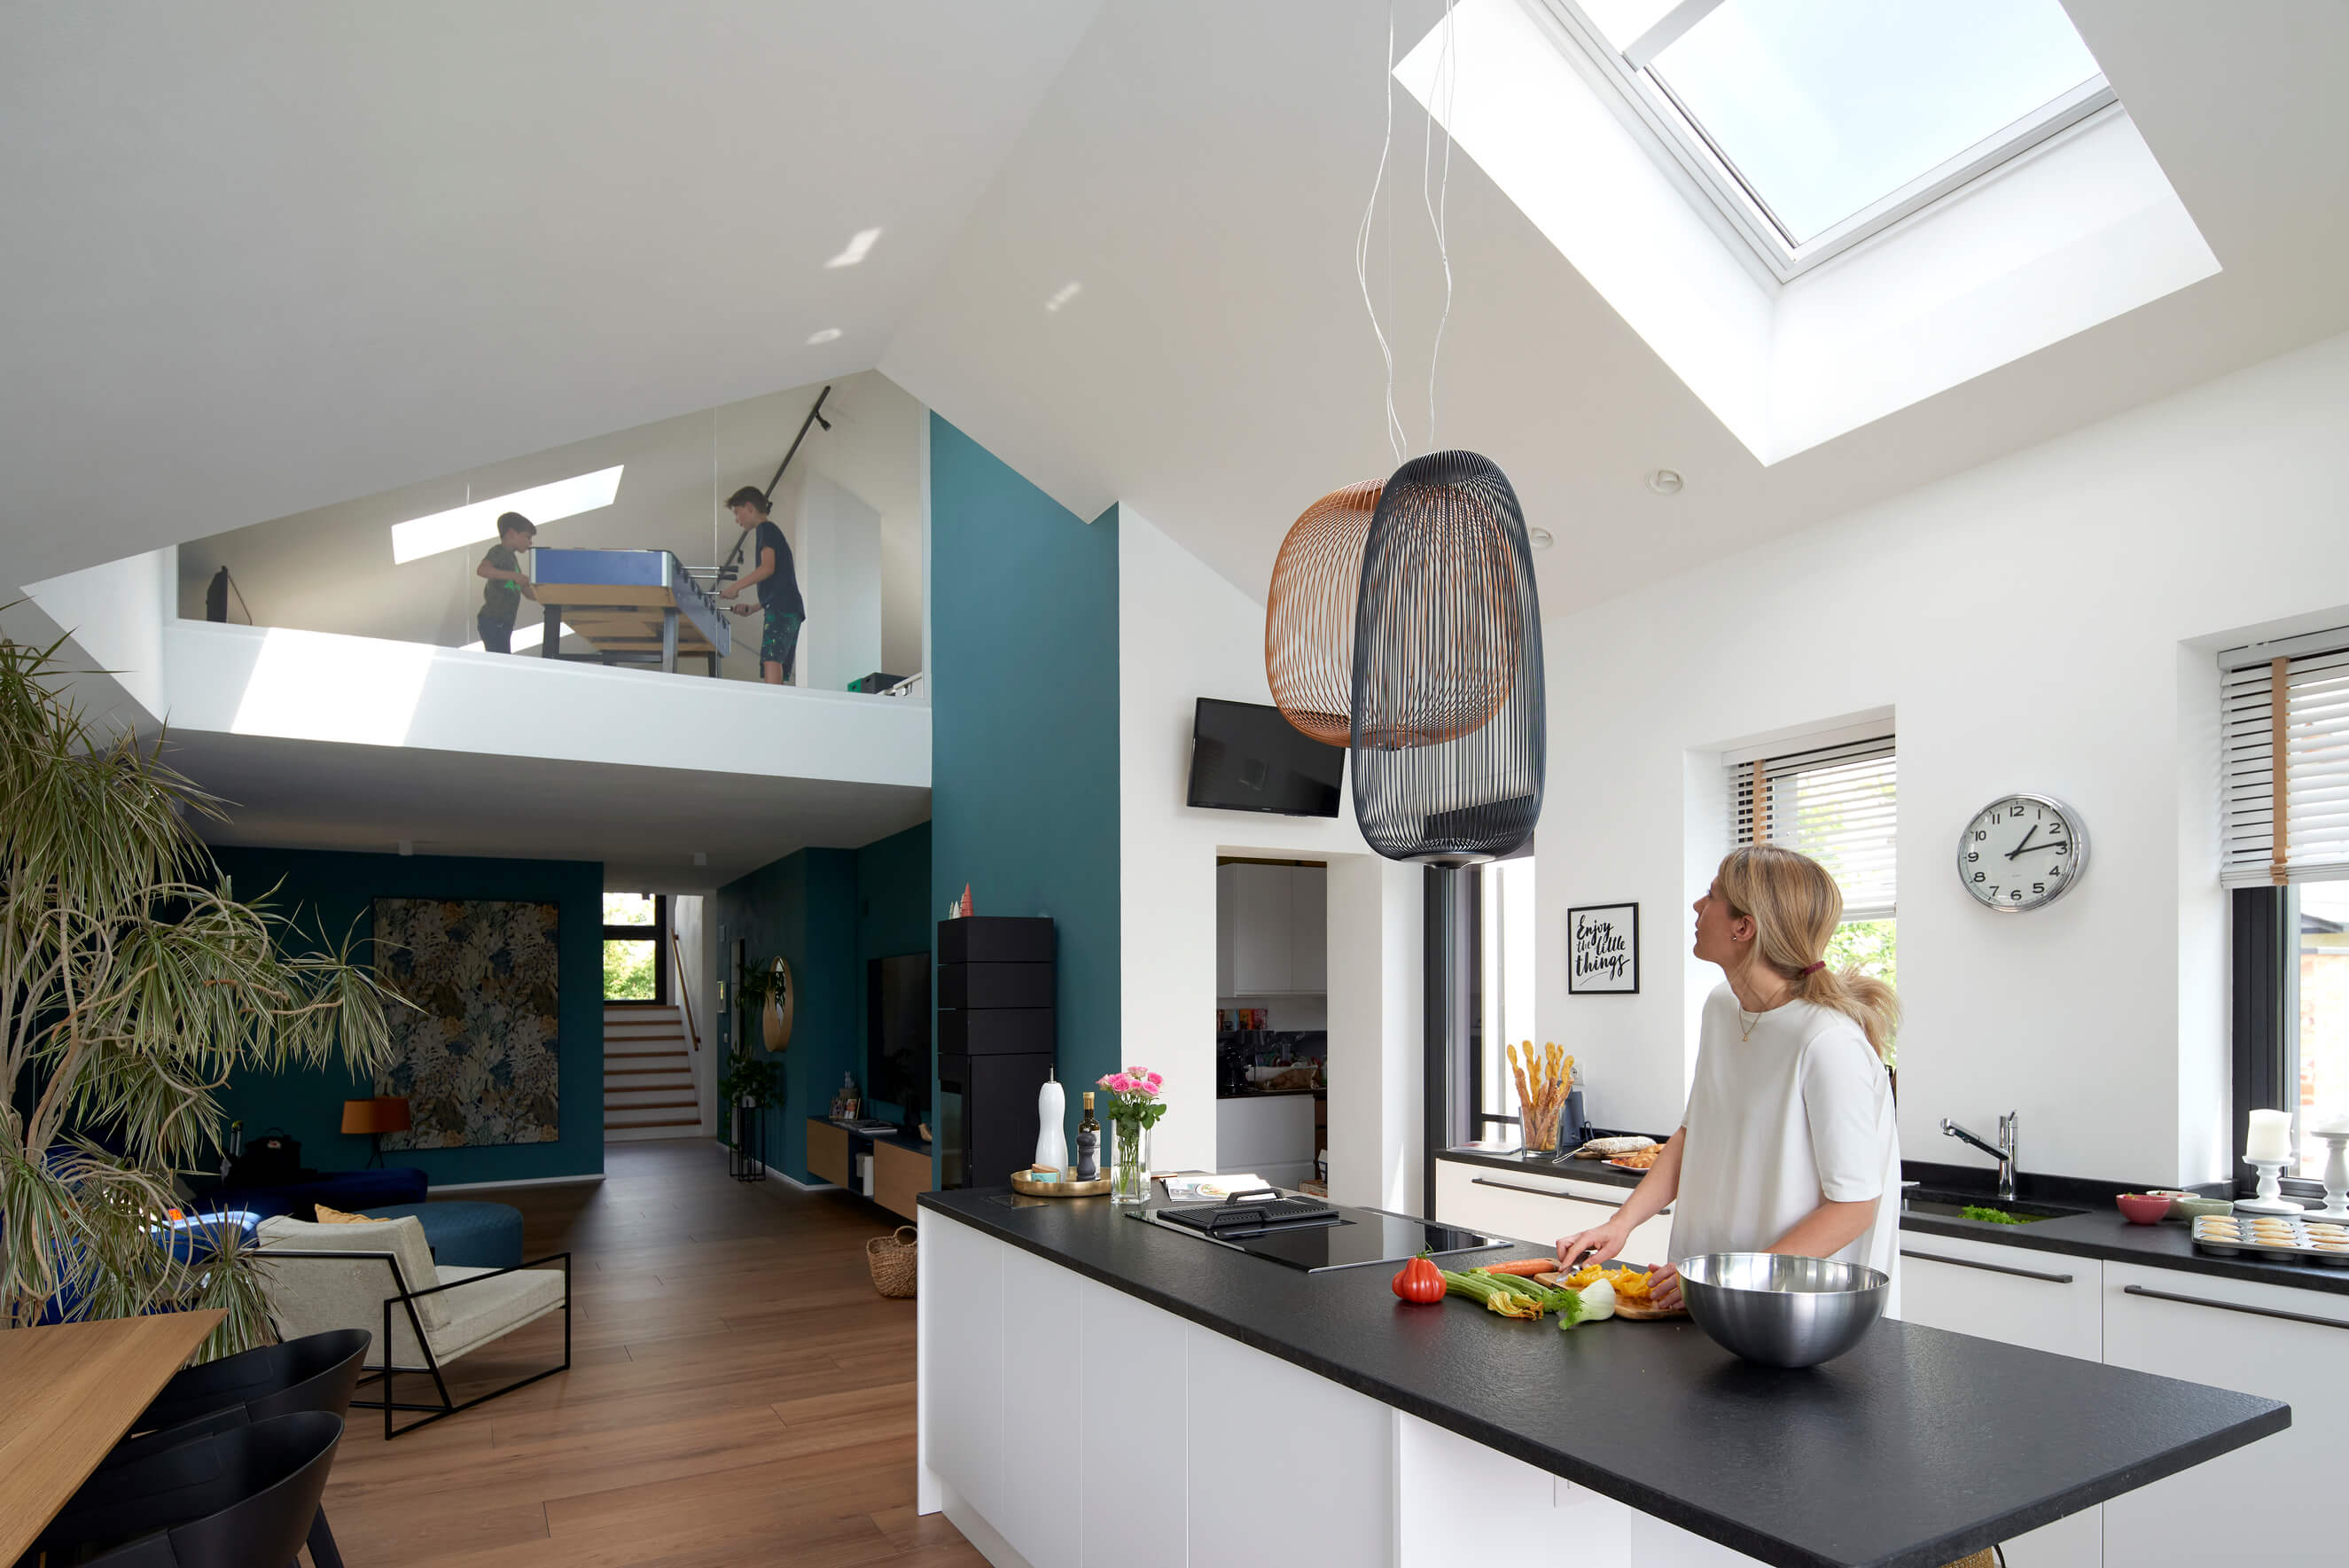 Cucina moderna e luminosa con finestra per tetti VELUX e livello soppalcato.